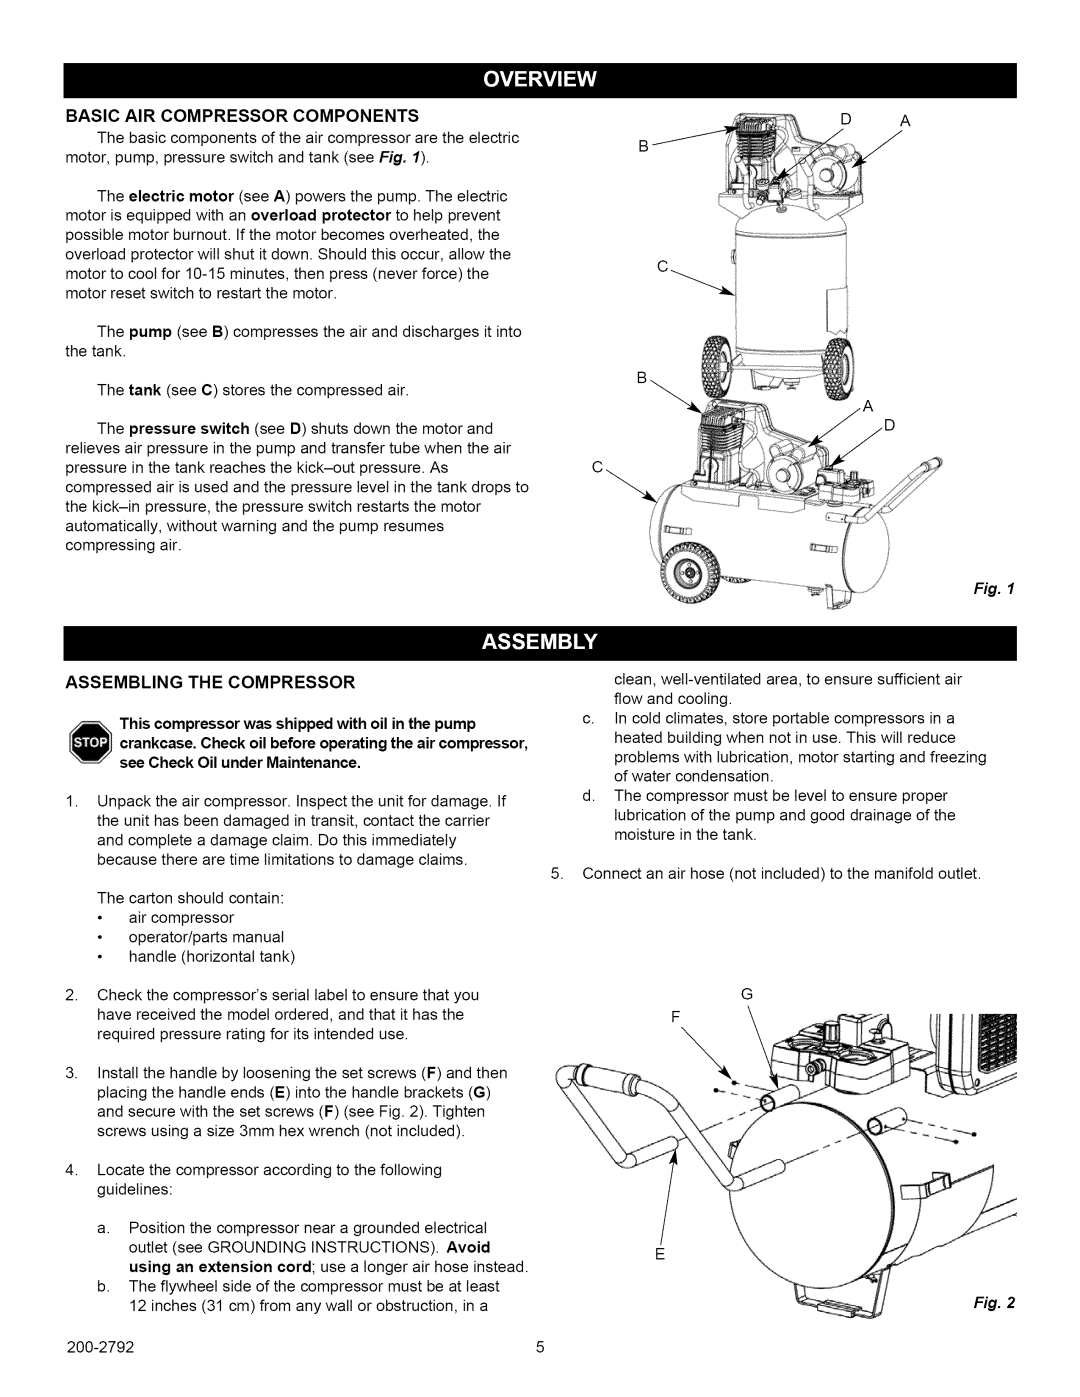 Craftsman 921.16475, 921.16474 owner manual Assembling The Compressor 